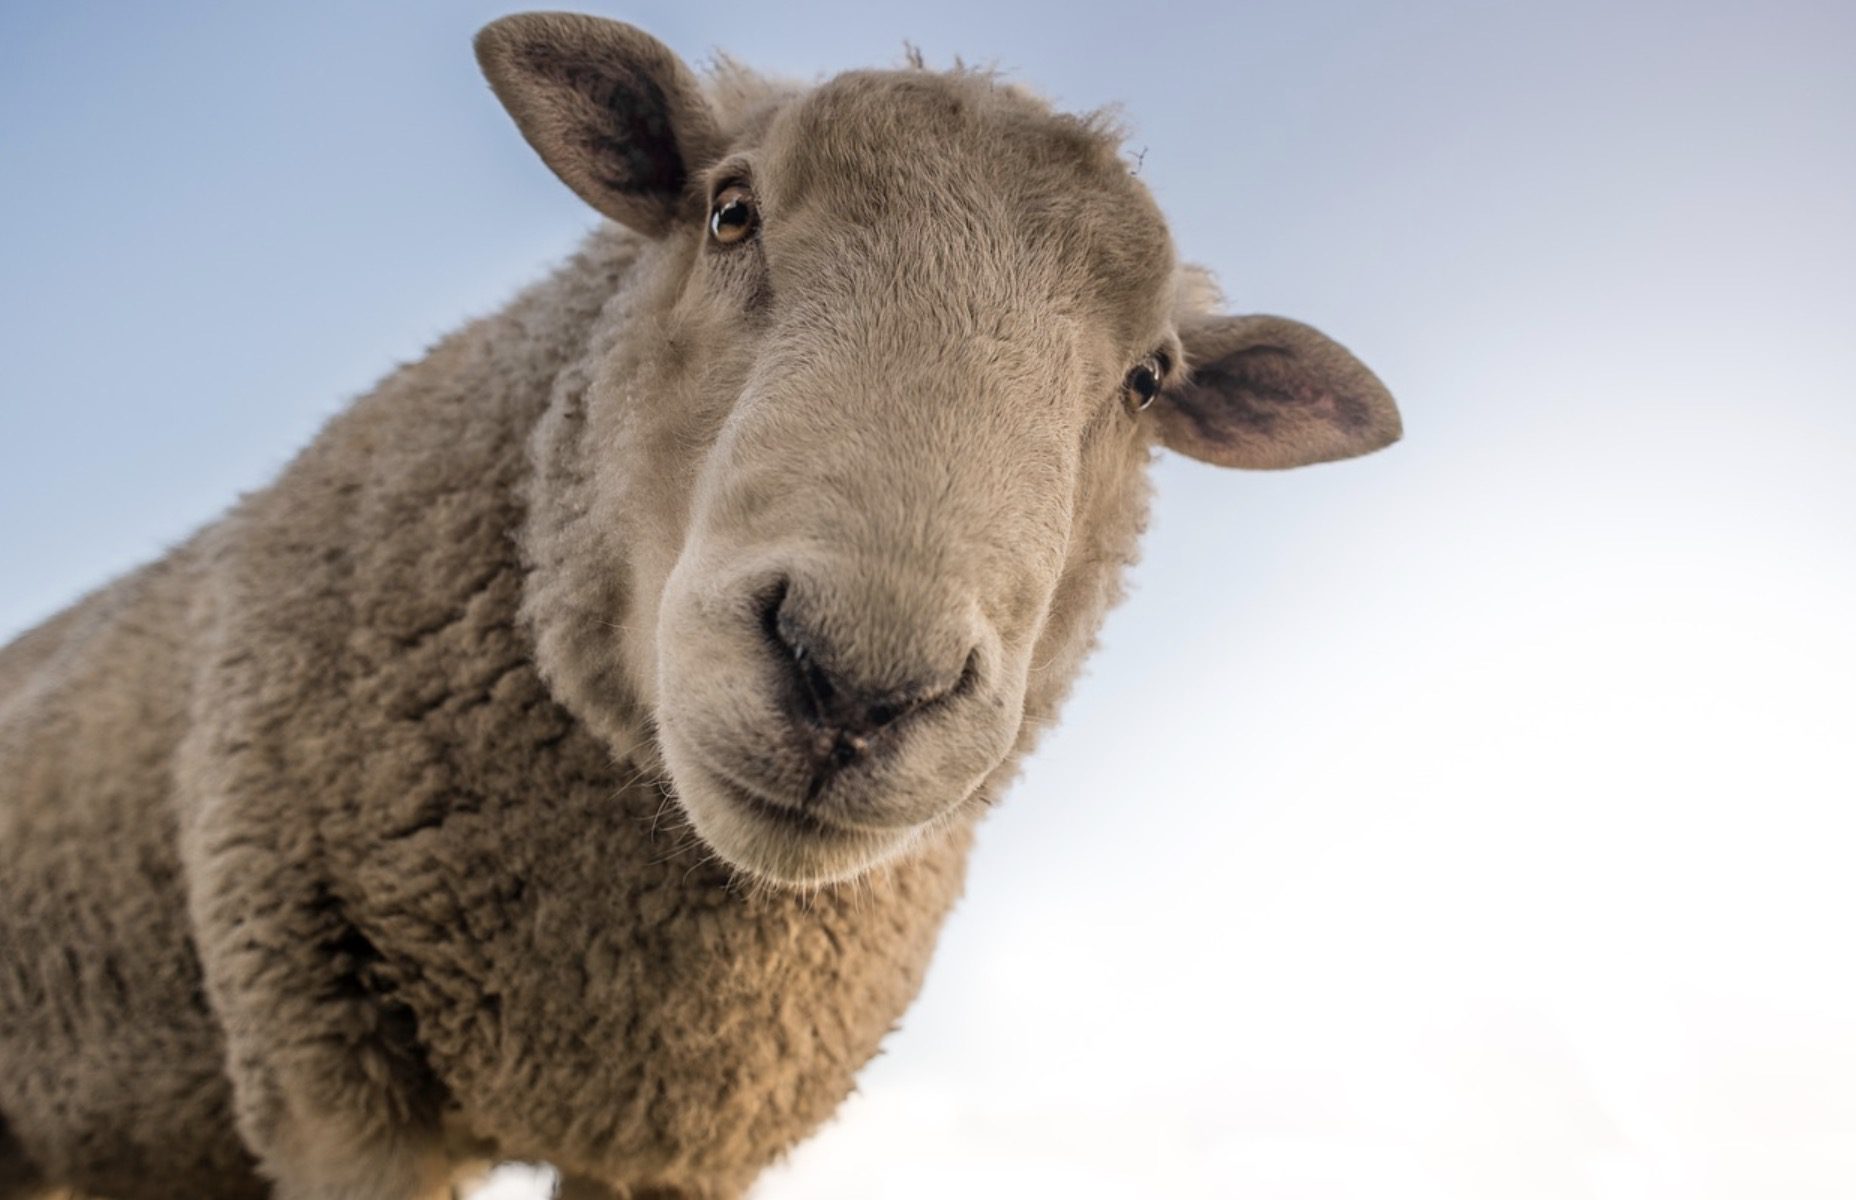 15 moutons inscrits à l’école, une méthode pour éviter la fermeture